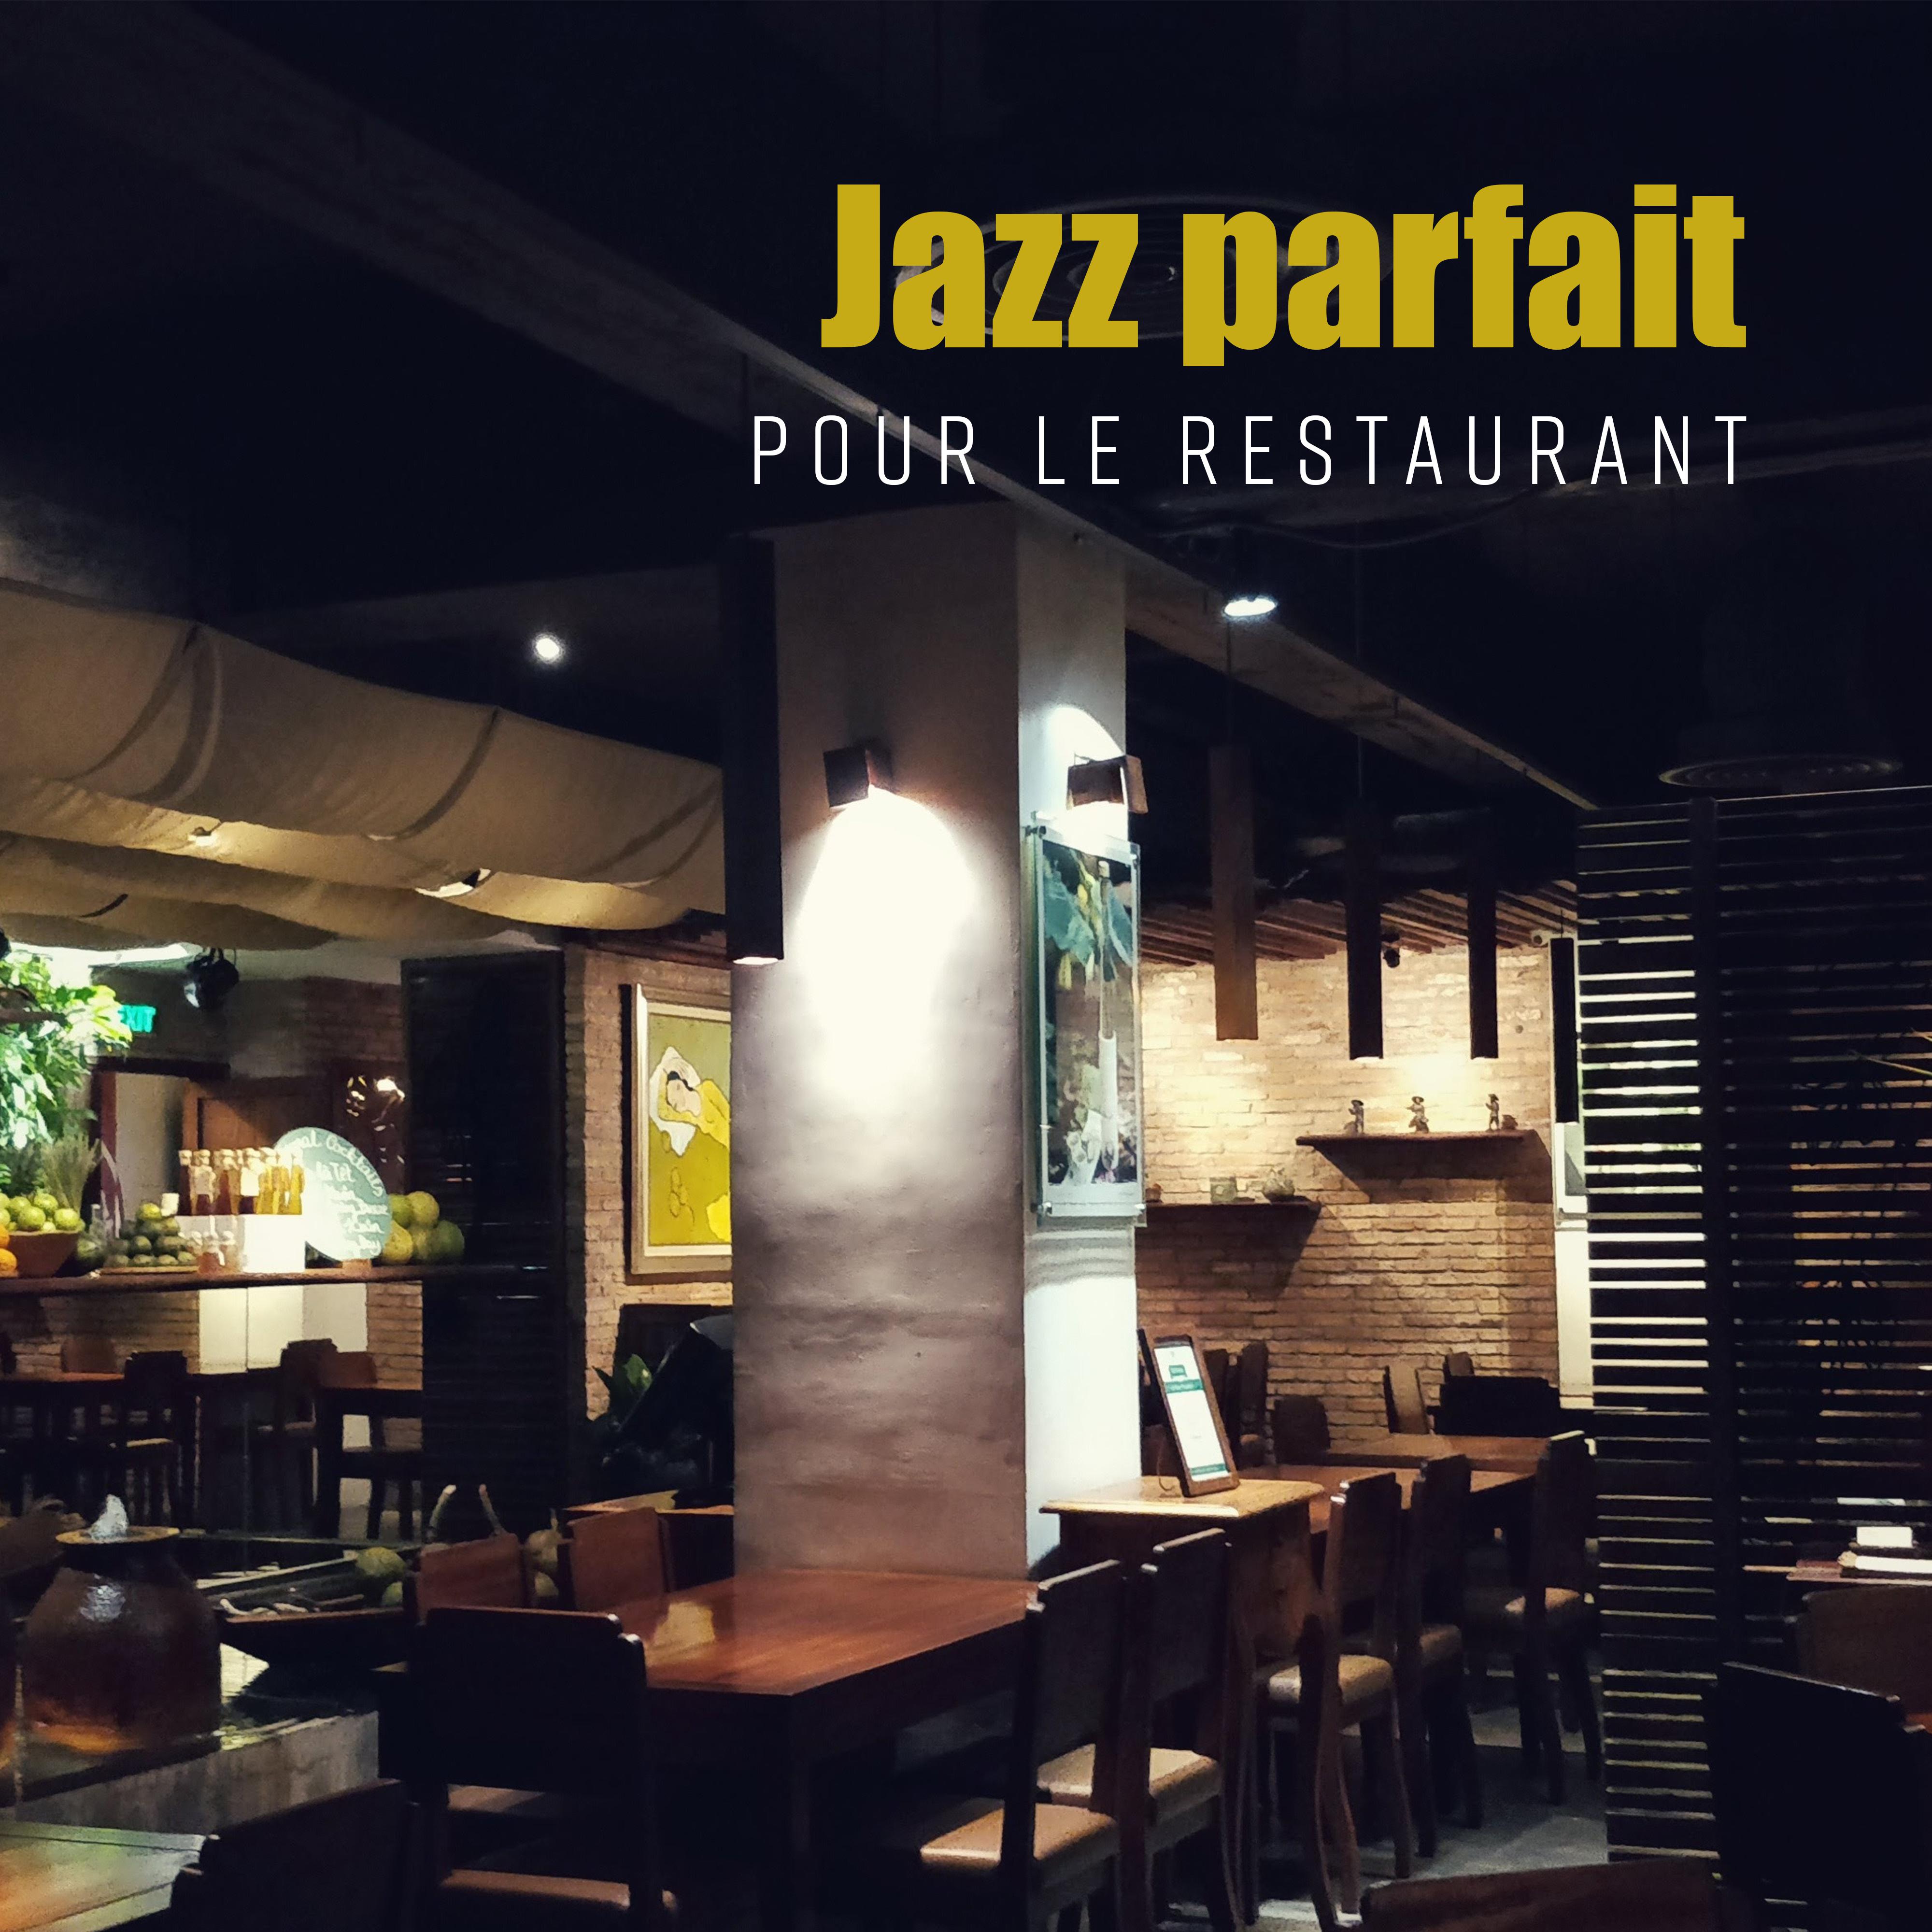 Jazz parfait pour le restaurant